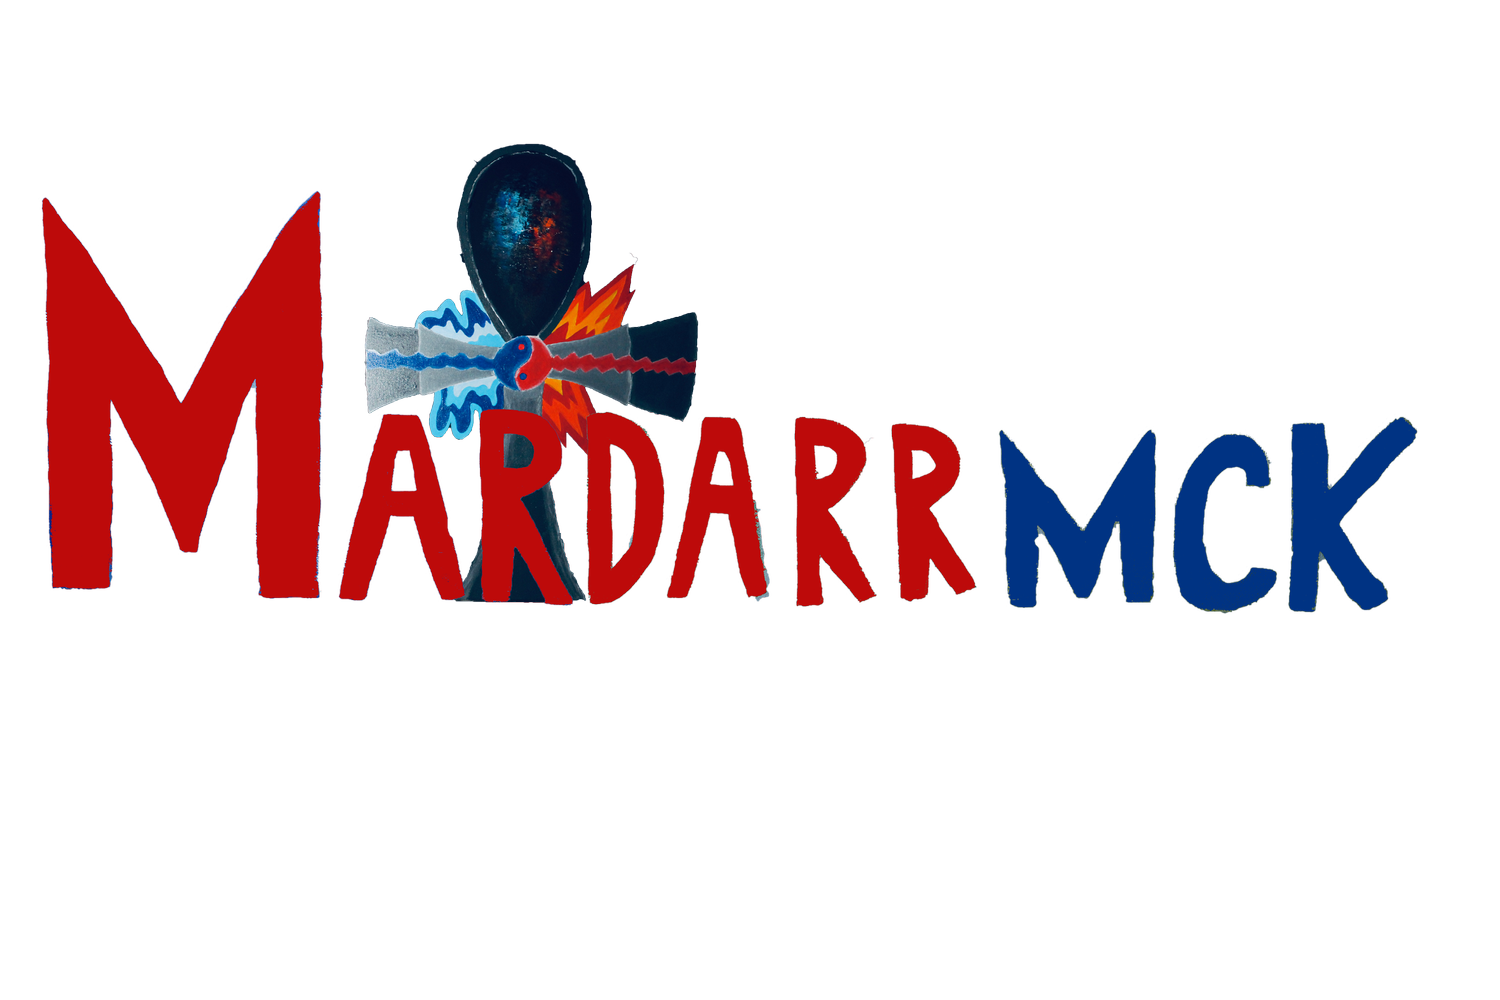 Mardarrmck